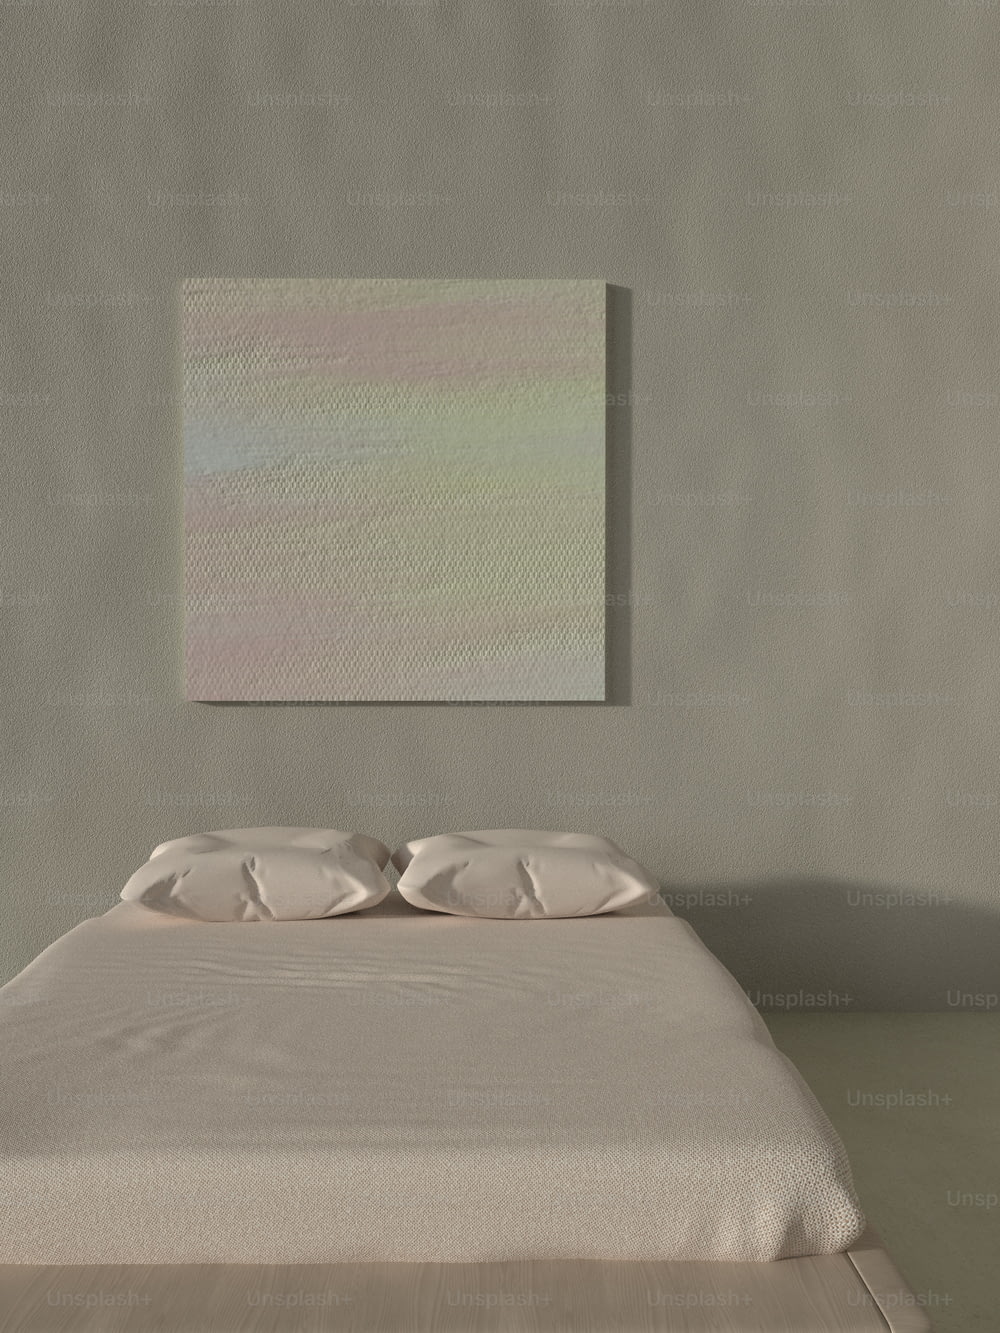 벽에 그림이있는 방의 침대